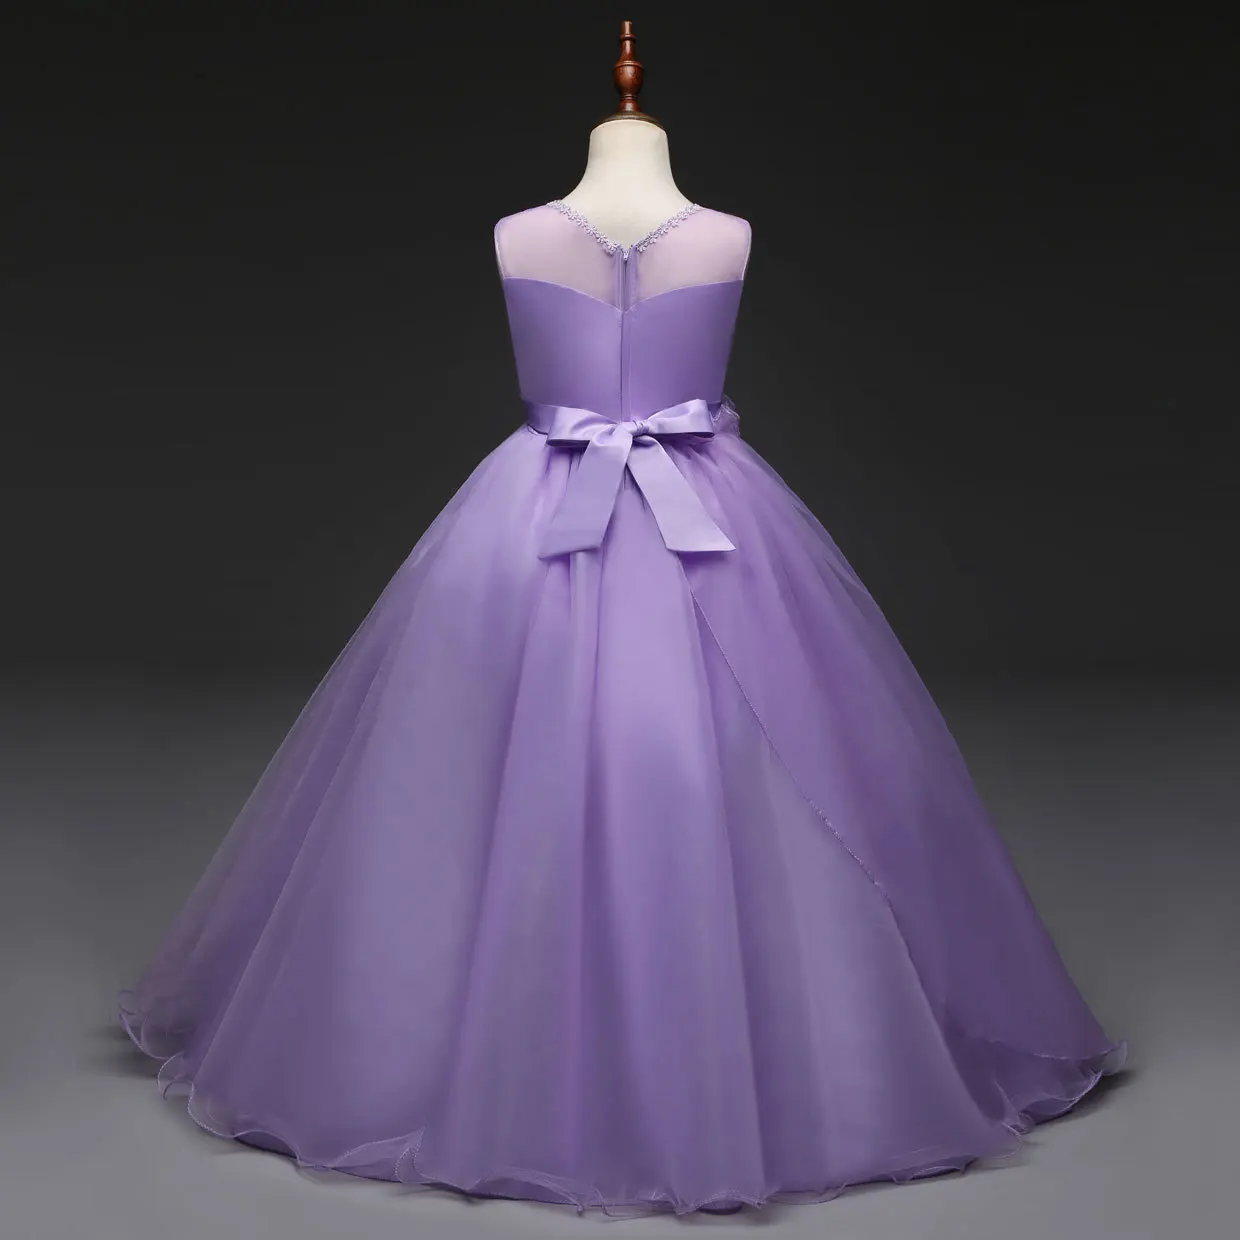 Роскошная юбка-американка для детей для девочек в цветочек с юбкой-годе, розового и белого цвета светильник фиолетового цвета, комплект вечерней одежды для длинный детский праздничный костюм бальное платье вечерние платья